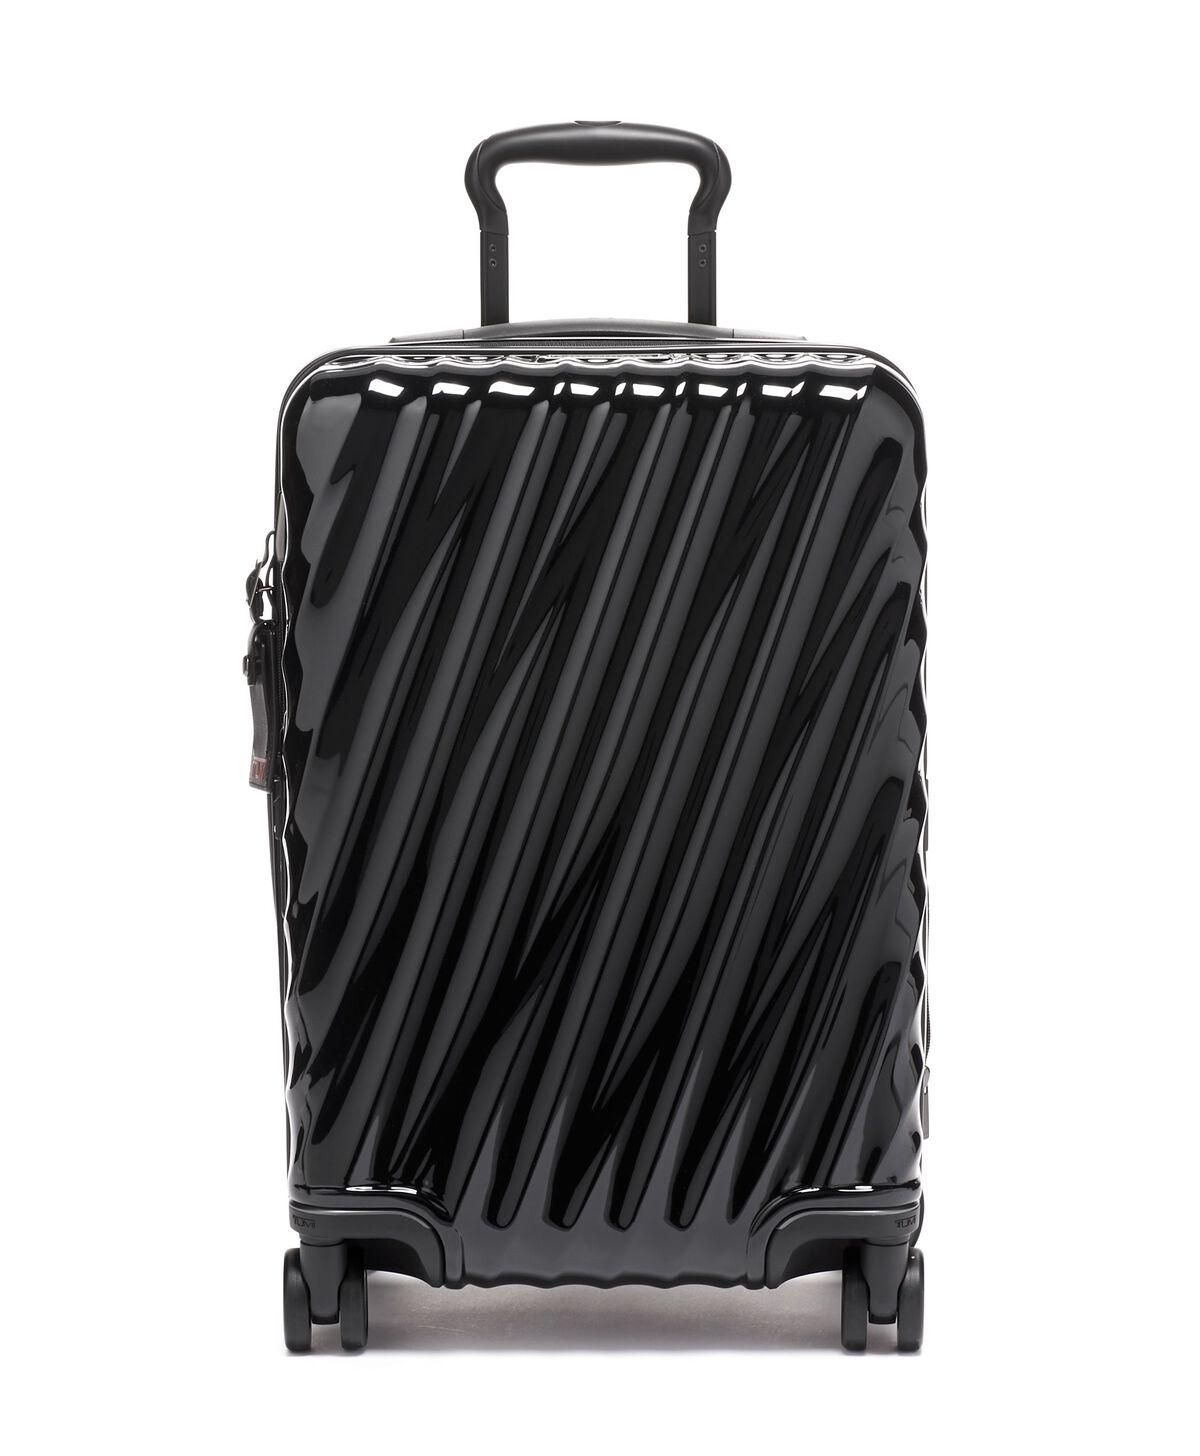 19 Degree International Expandable 4 Wheeled Carry-On - Voyage Luggage